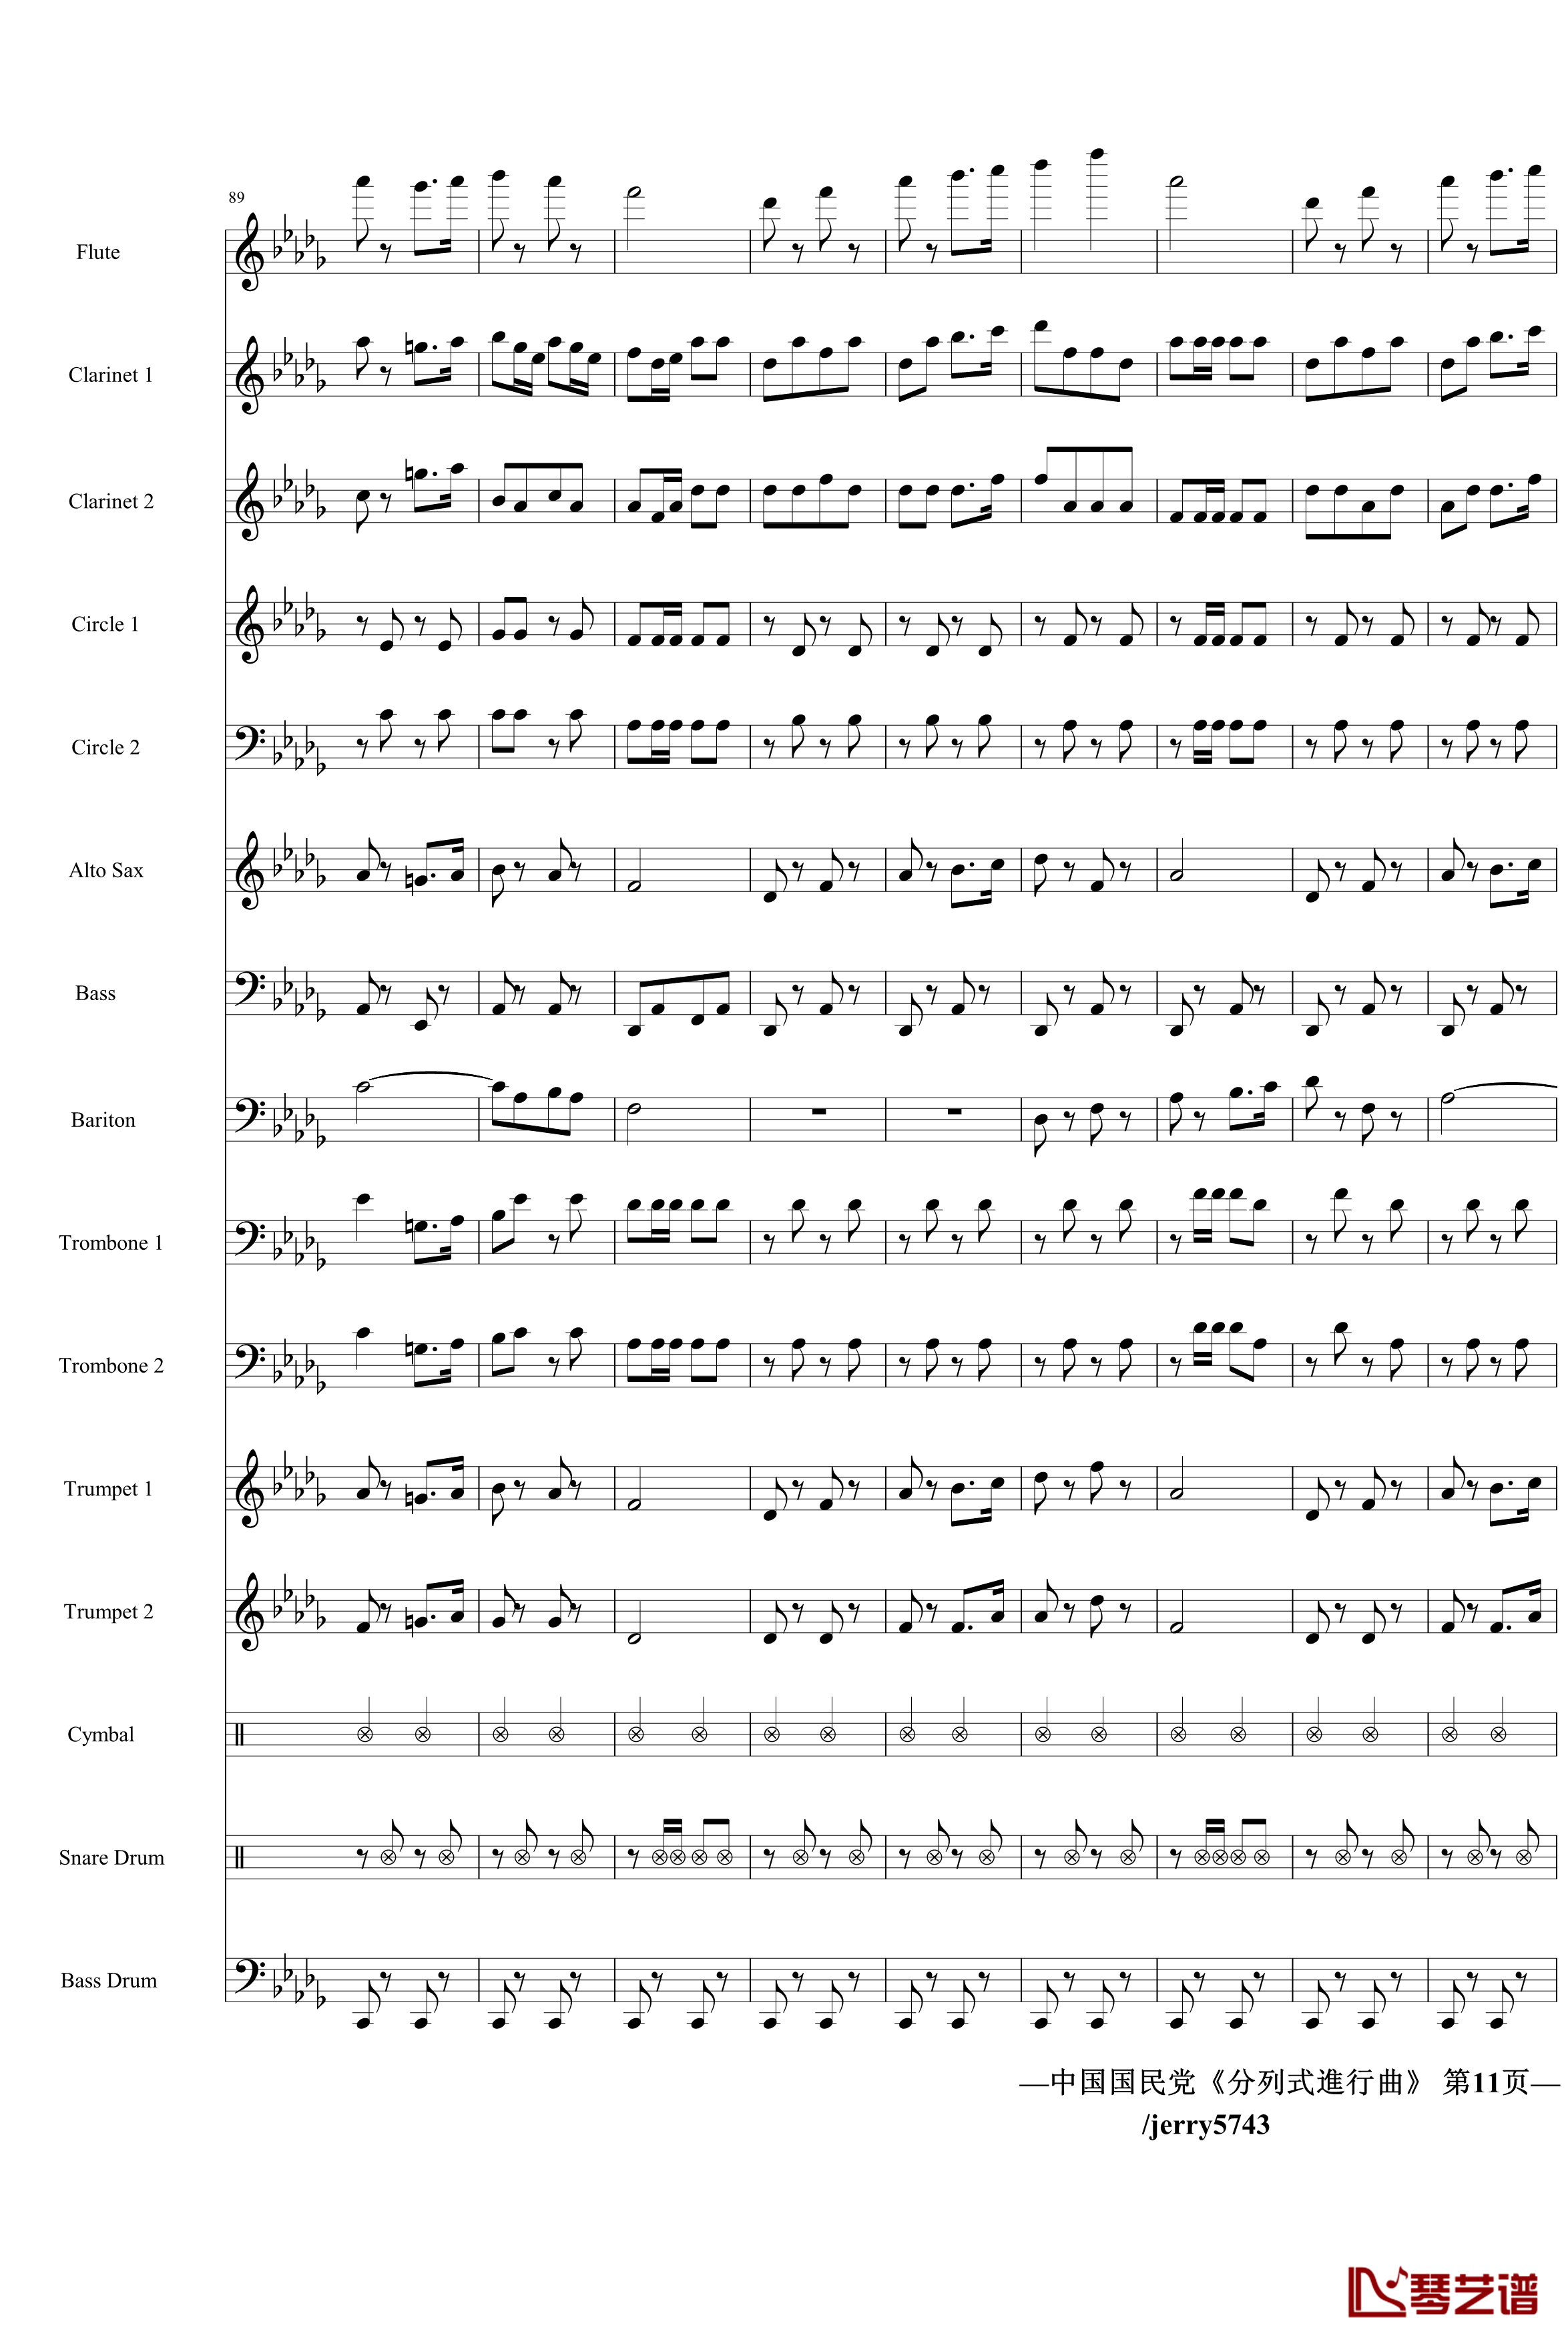 分列式進行曲钢琴谱-jerry5743出品-中国名曲11